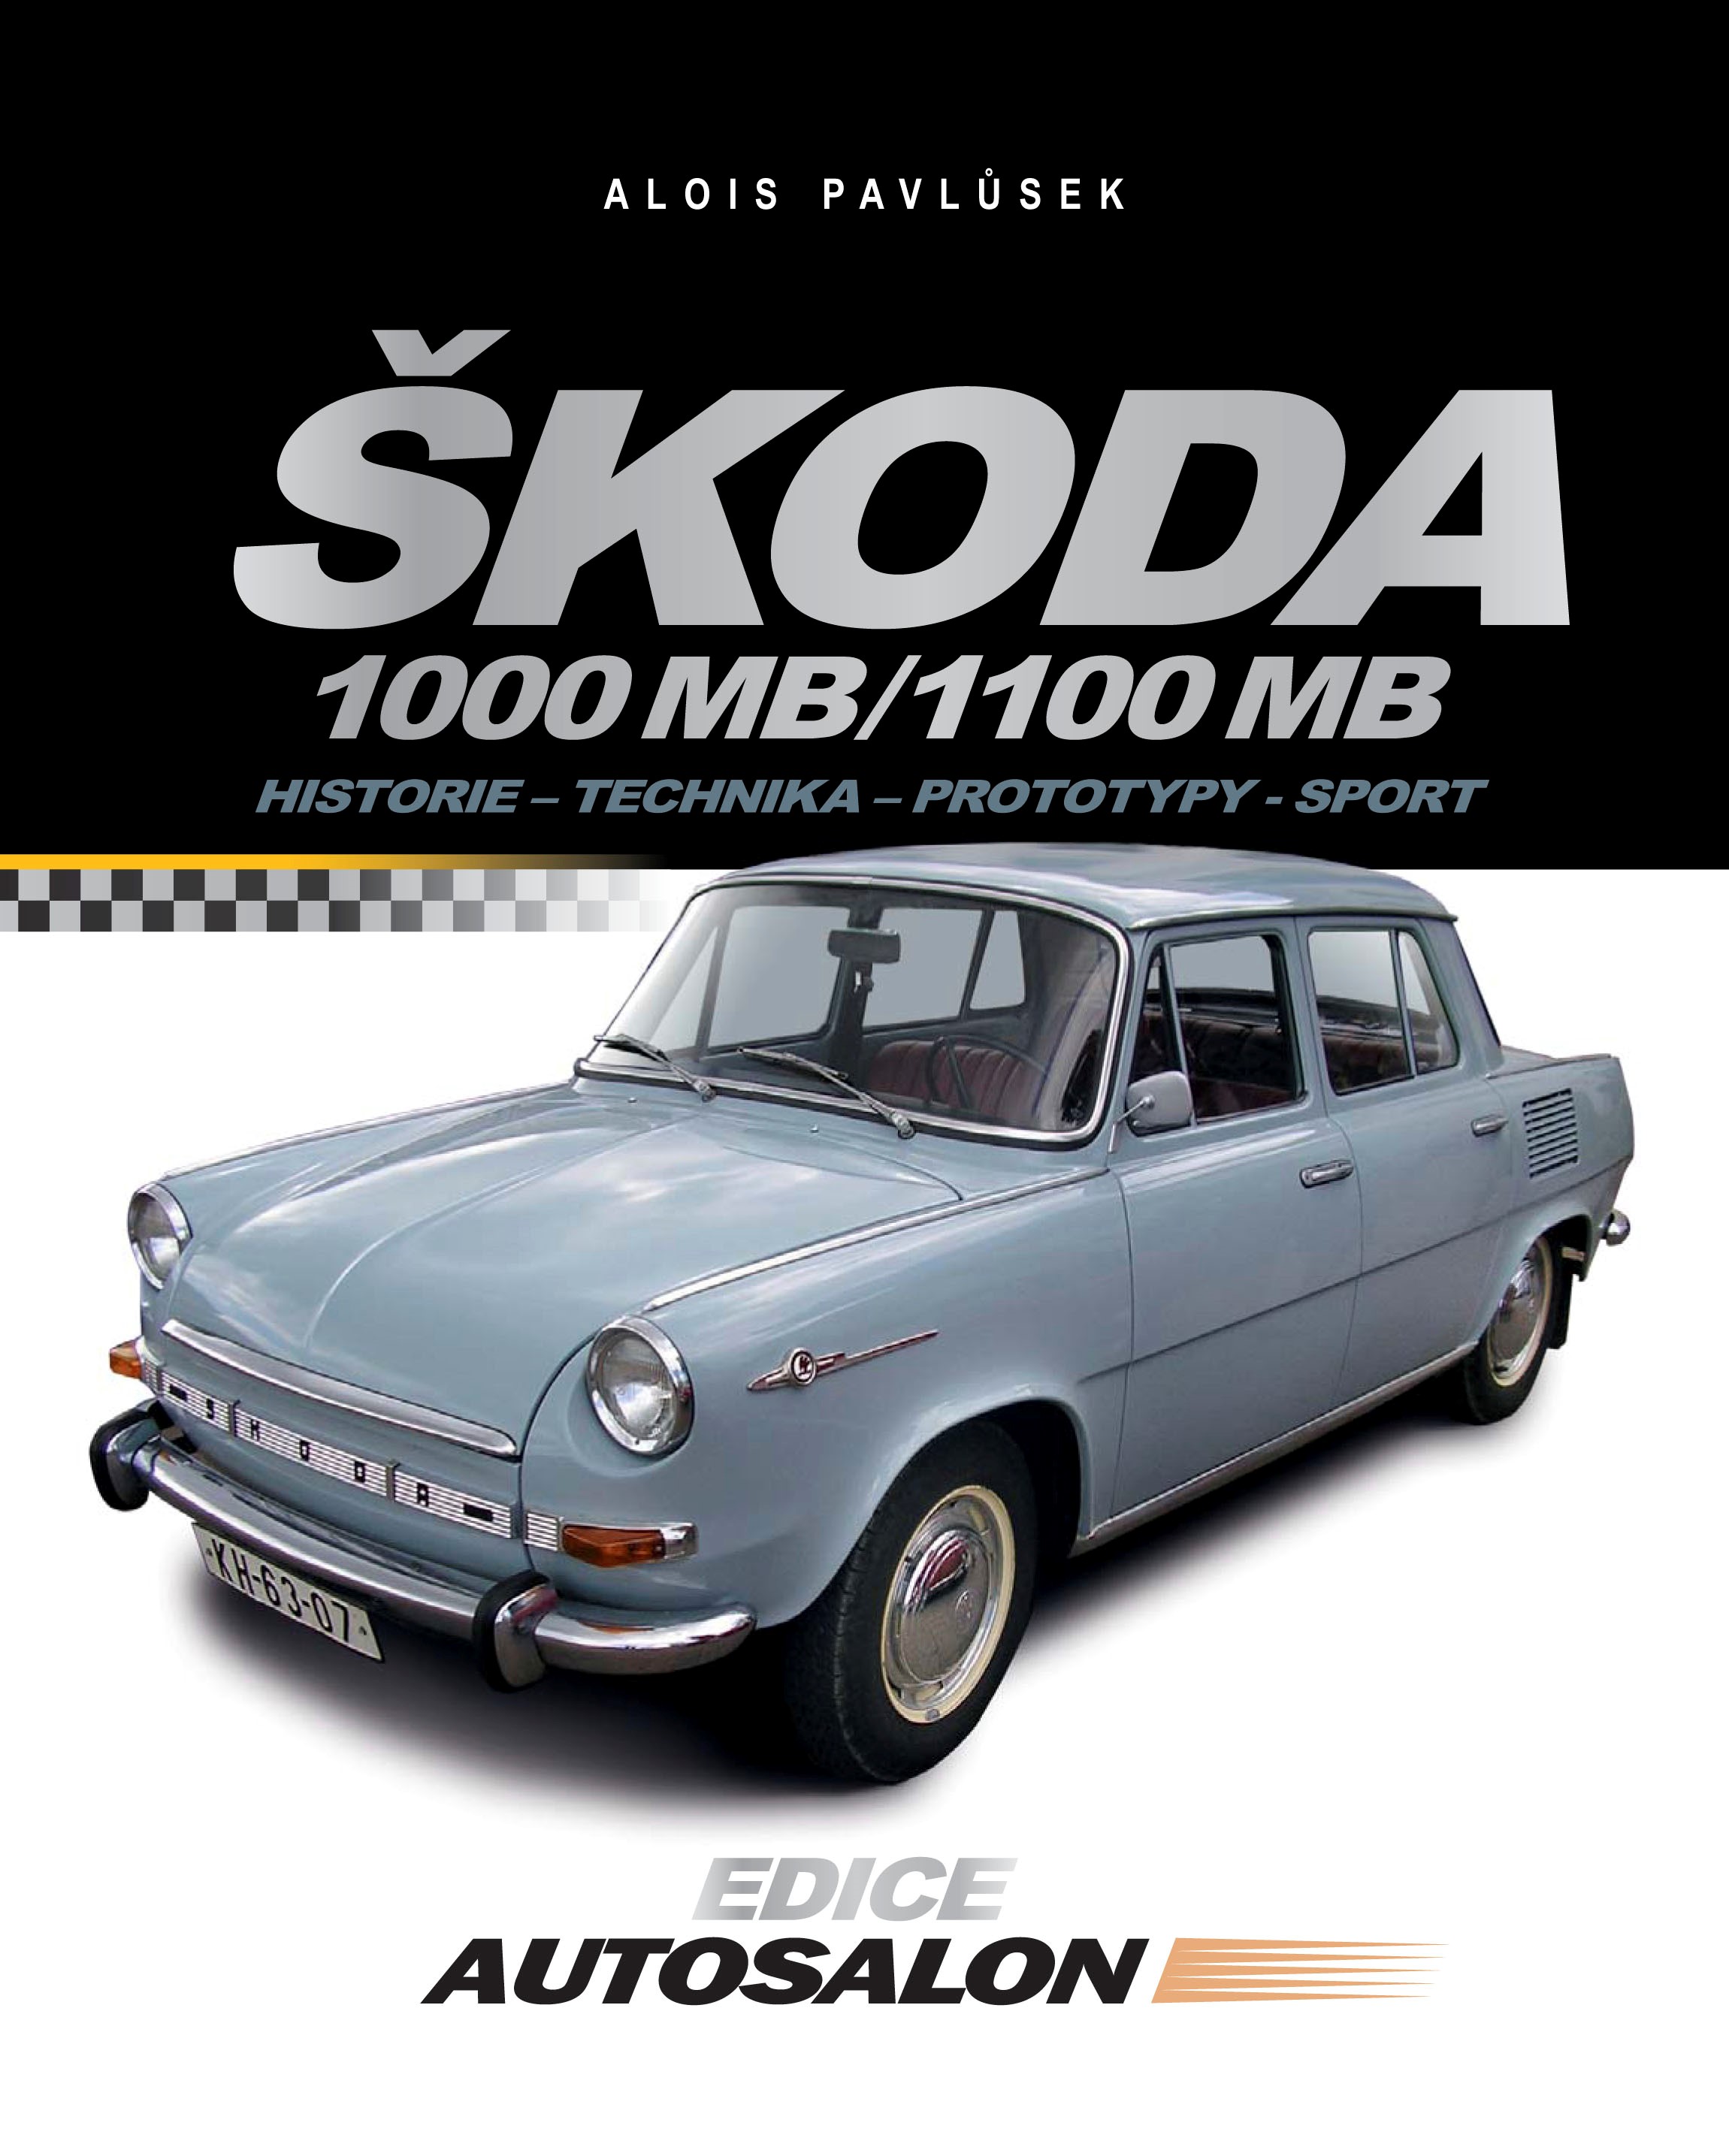 ŠKODA 1000 MB / 1100 MB (HISTORIE, TECHNIKA, PROTOTYPY,...)